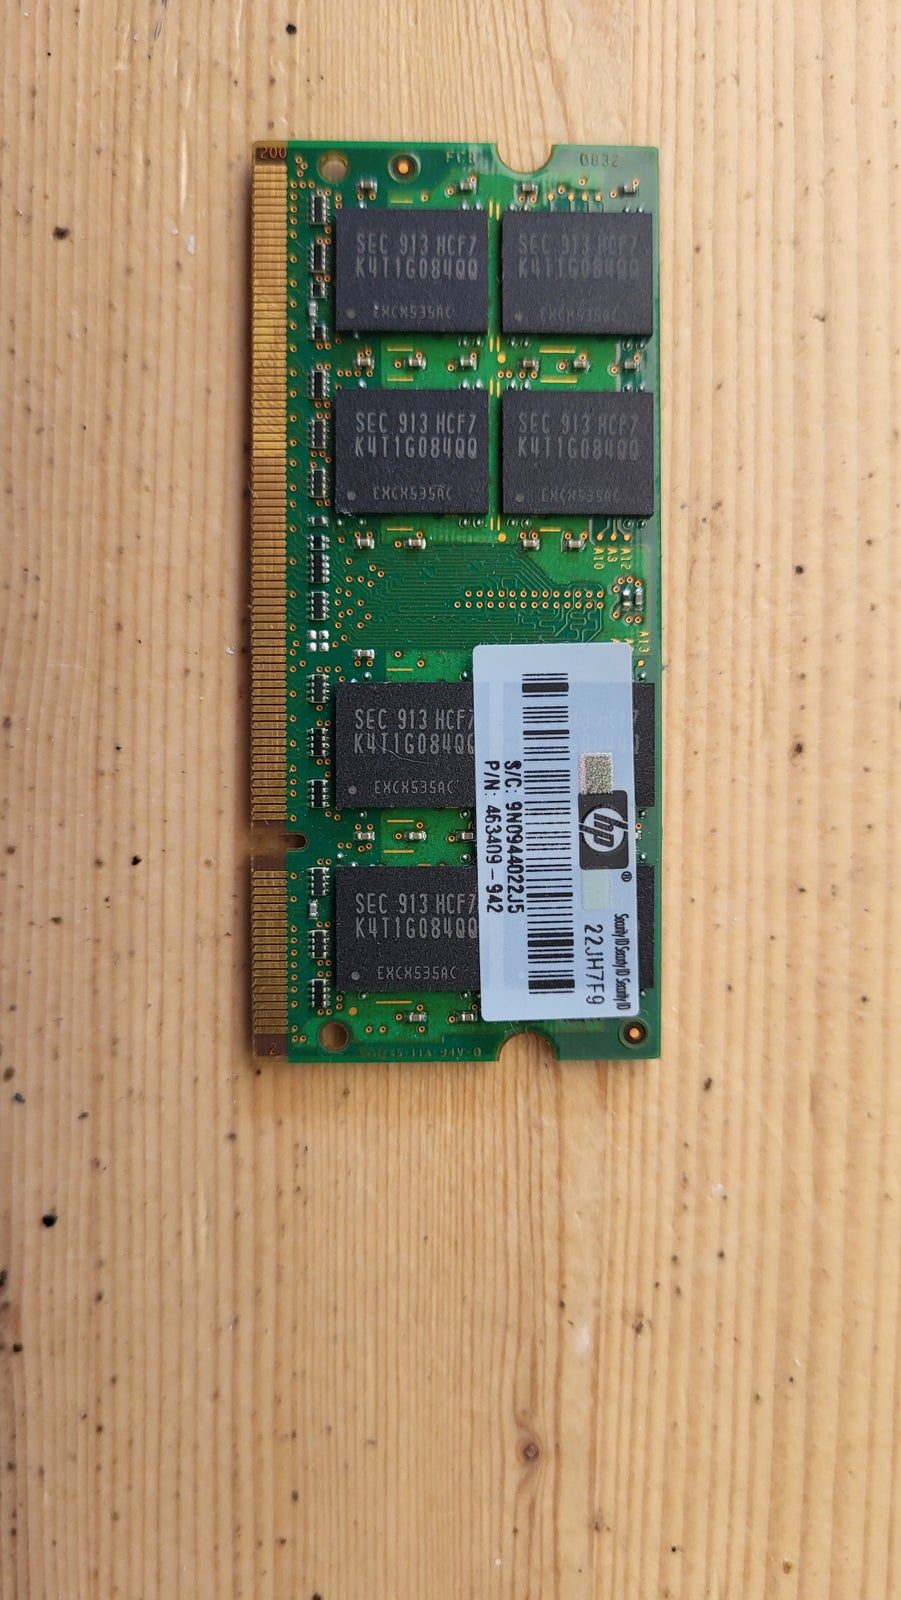 Samsung, 2x2GB, DDR2 SDRAM